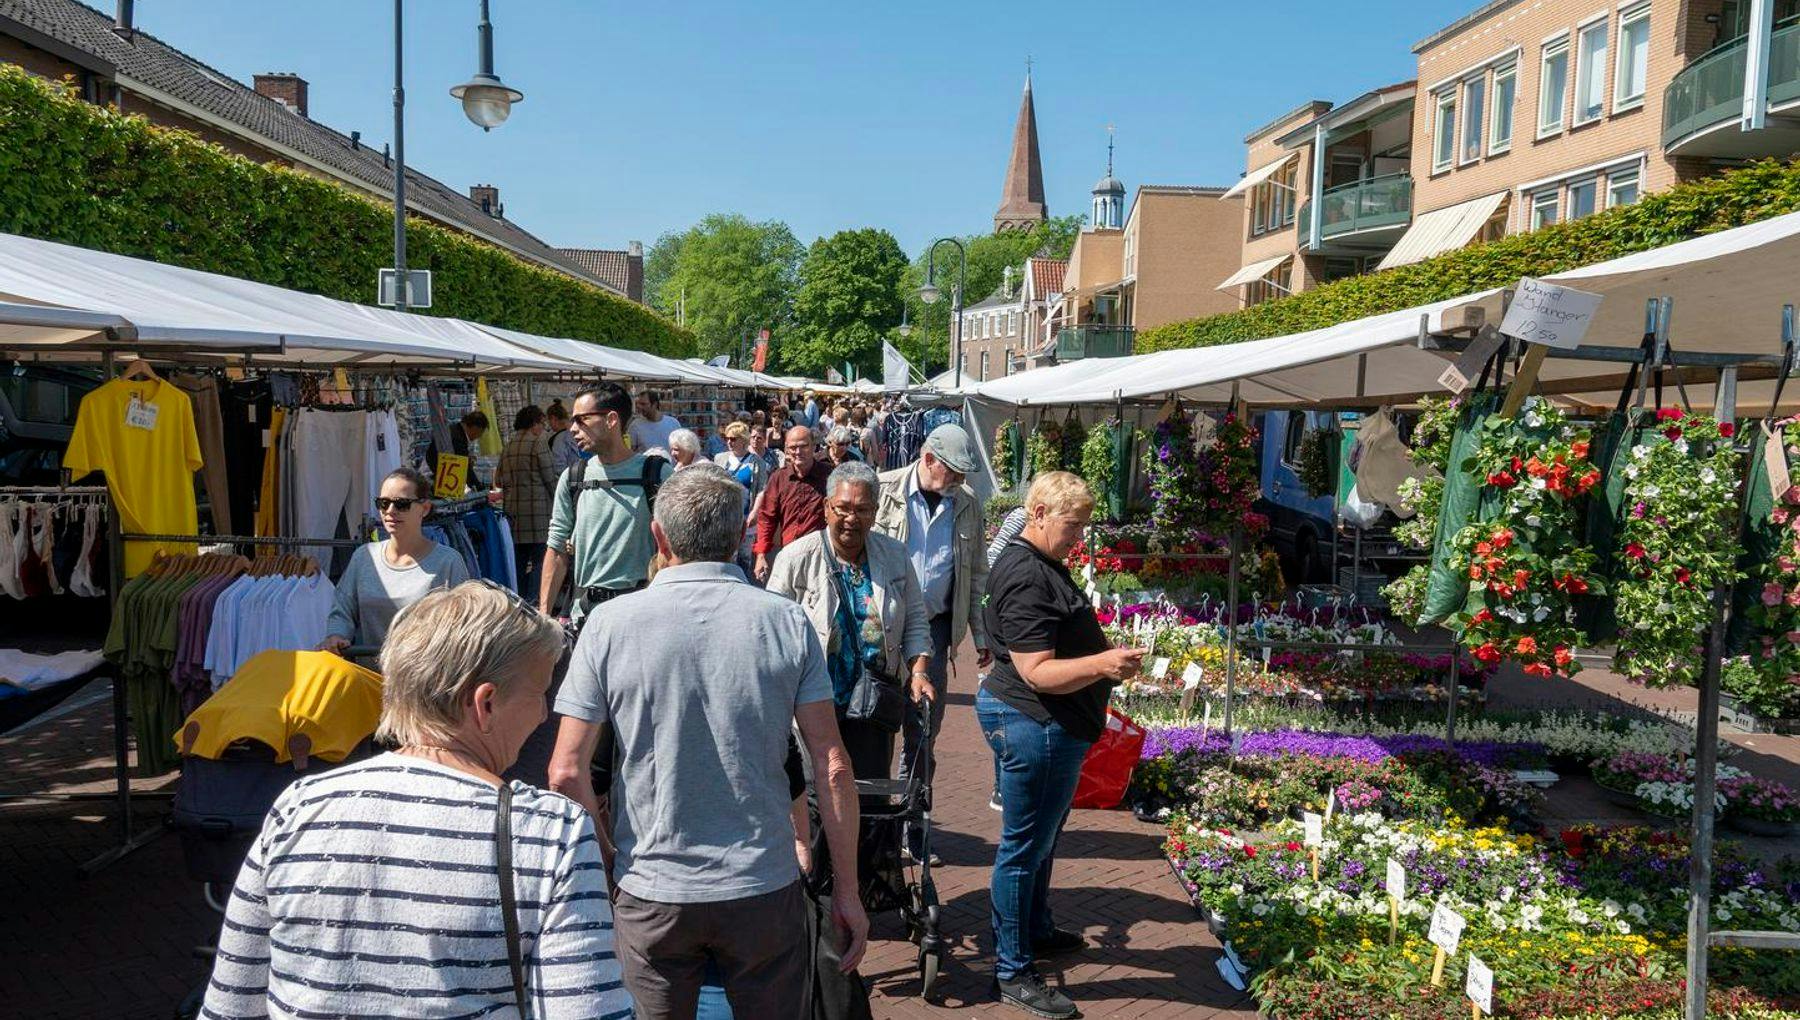 Heemskerk market City Centre